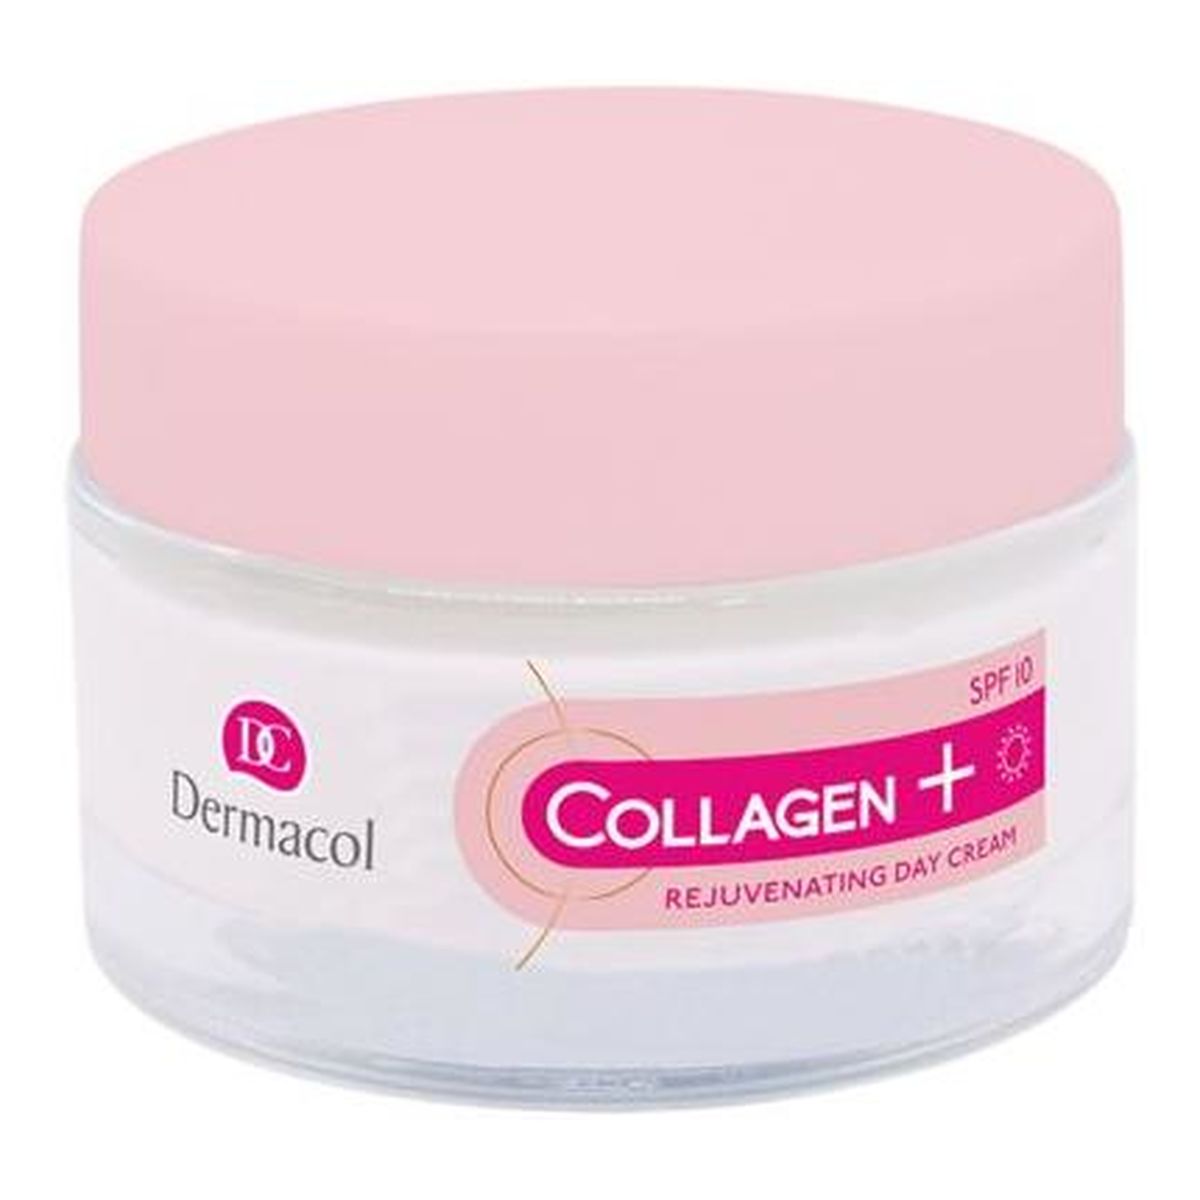 Dermacol Collagen Plus Intensive Rejuvenating Day Cream intensywnie odmładzający Krem na dzień 50ml